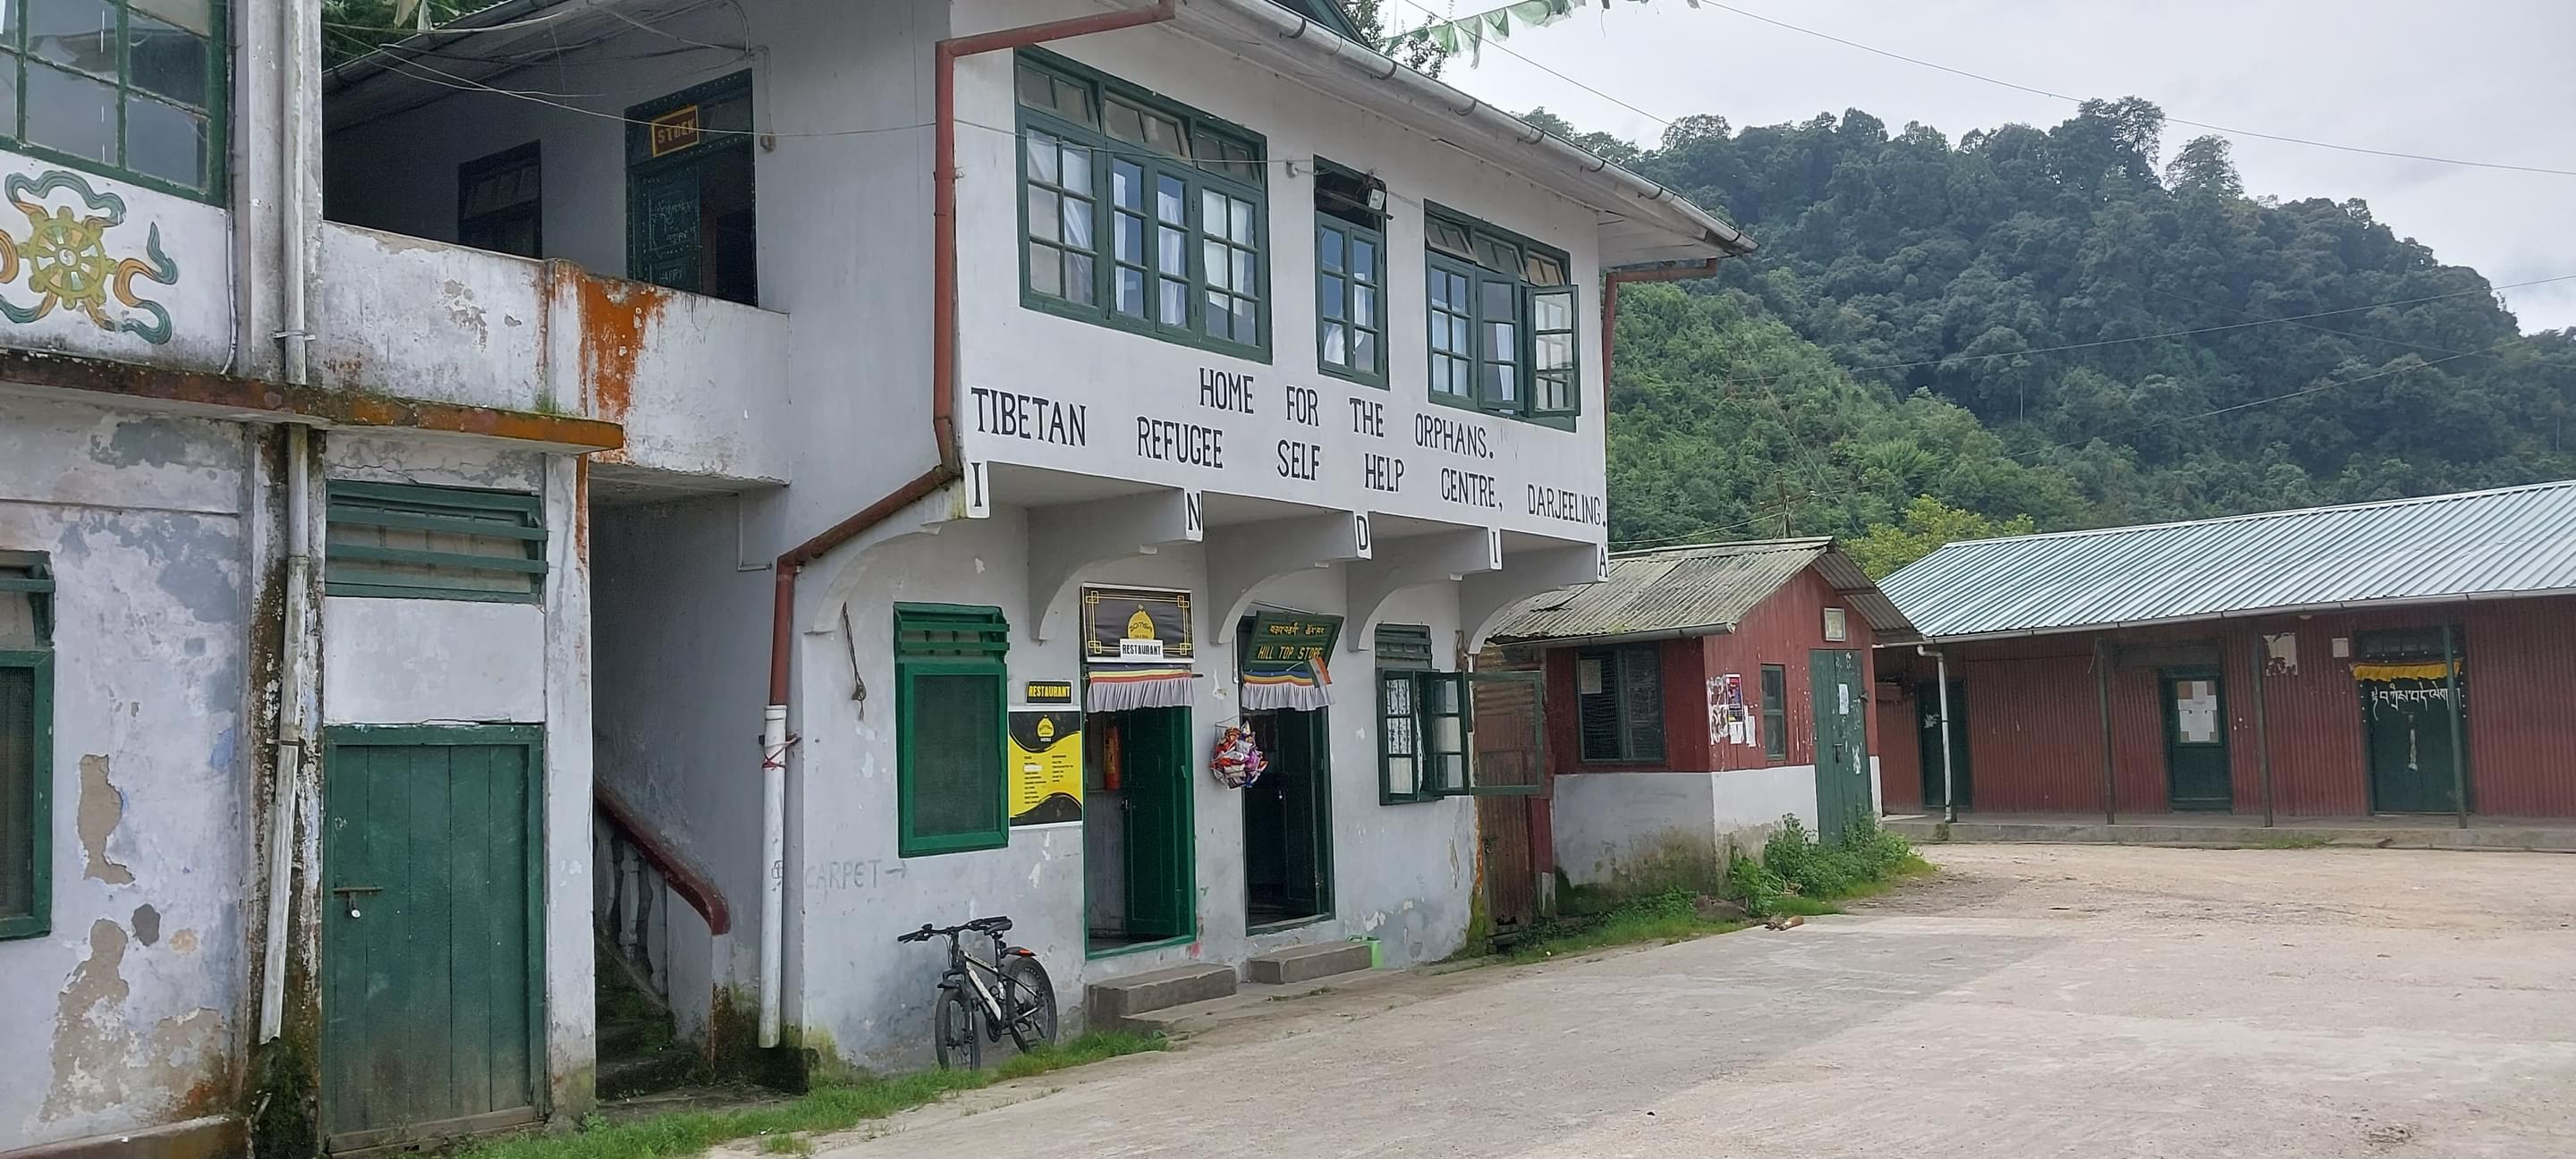 Tibetan Refugee Center Overview